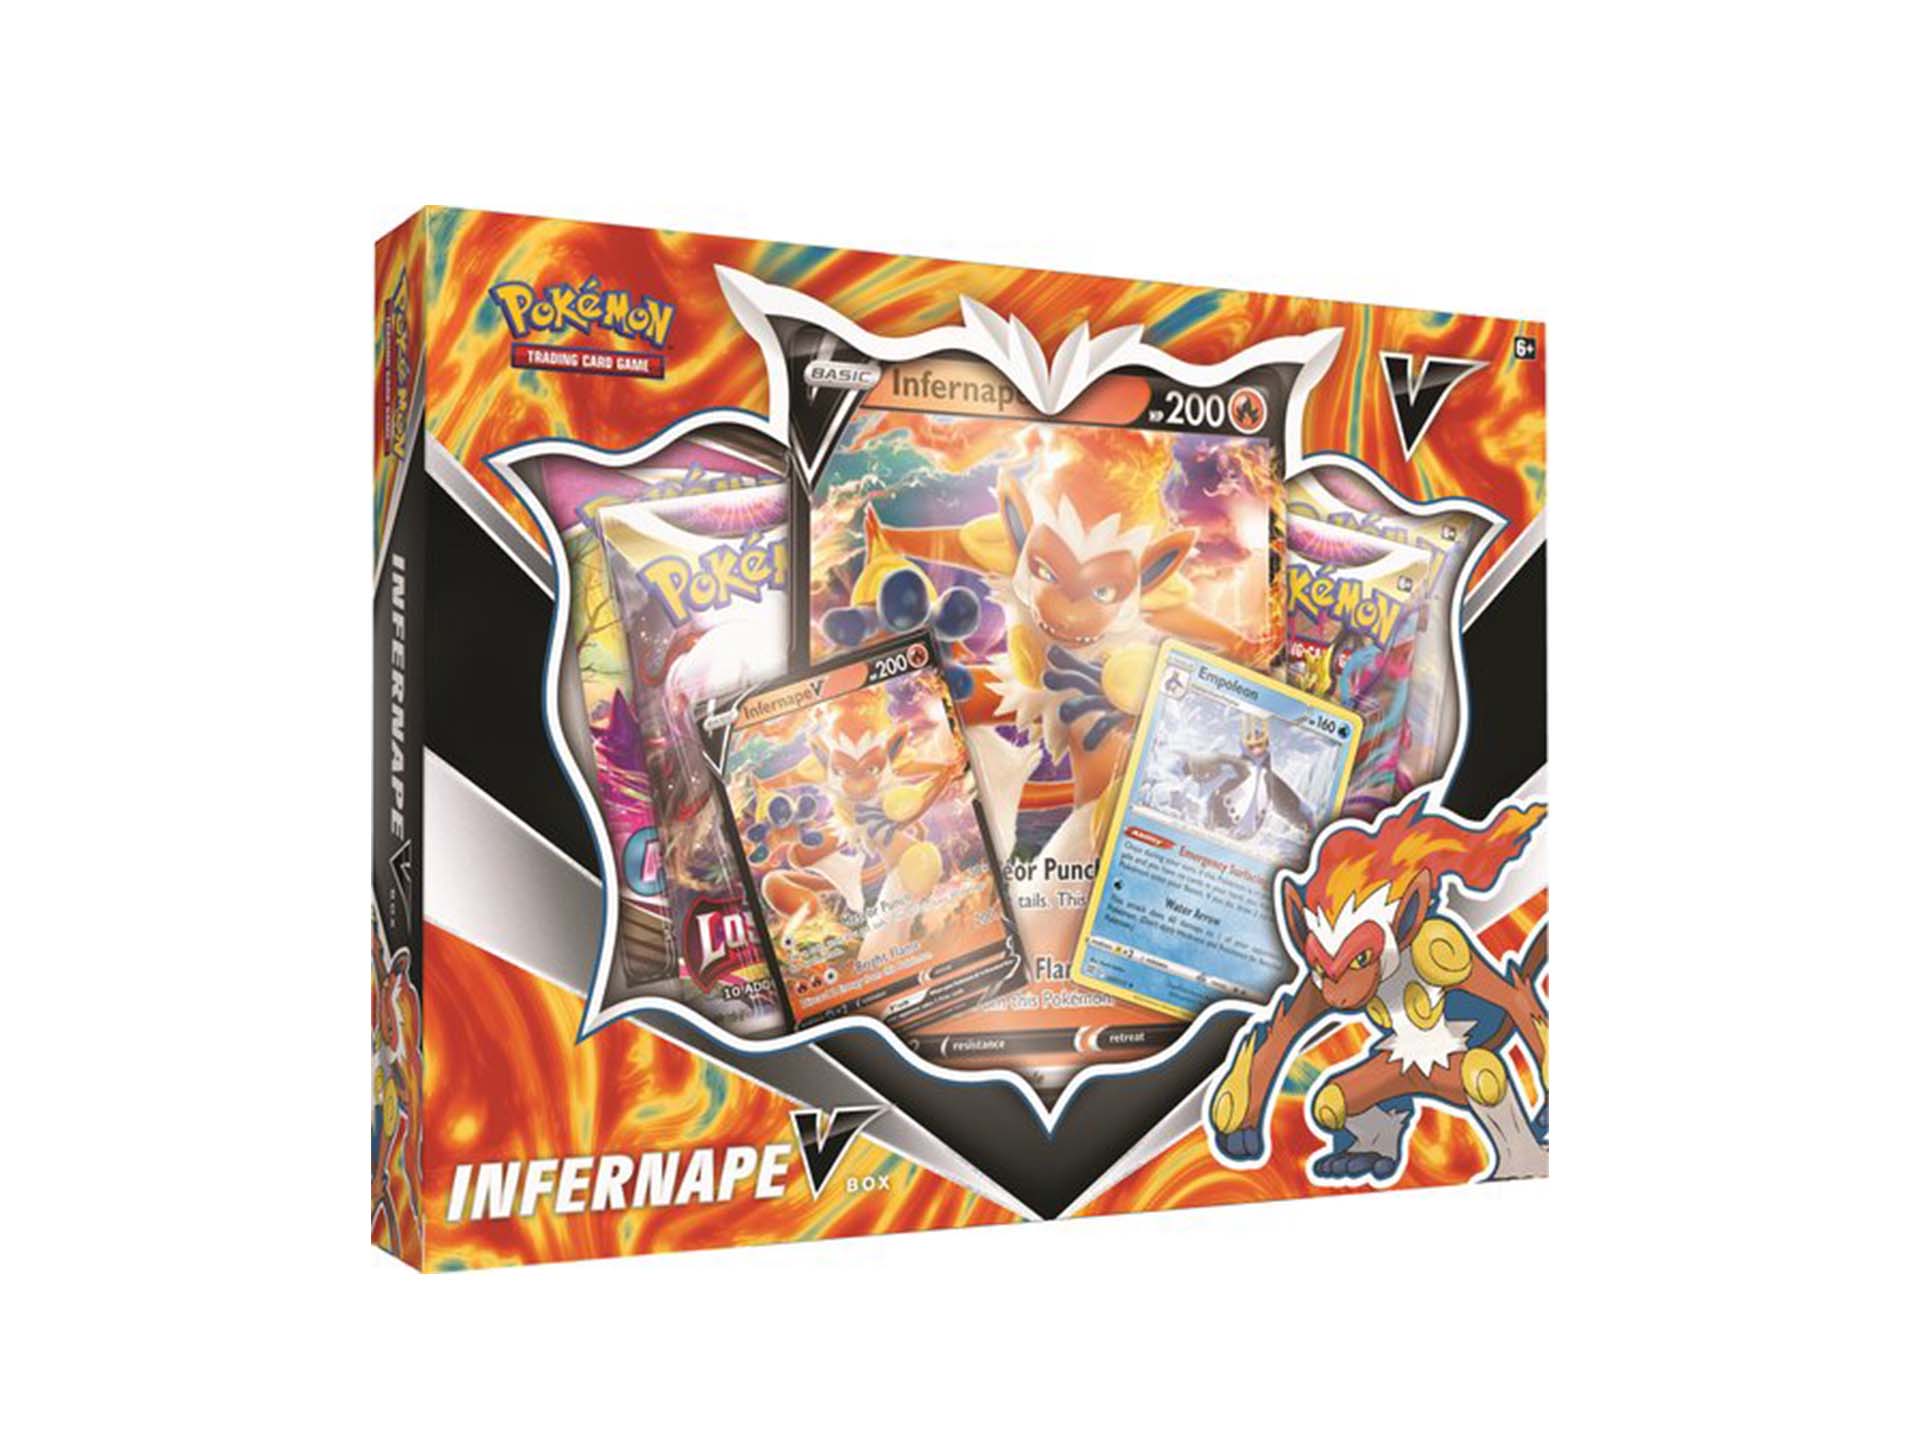 Pokémon Infernape Box